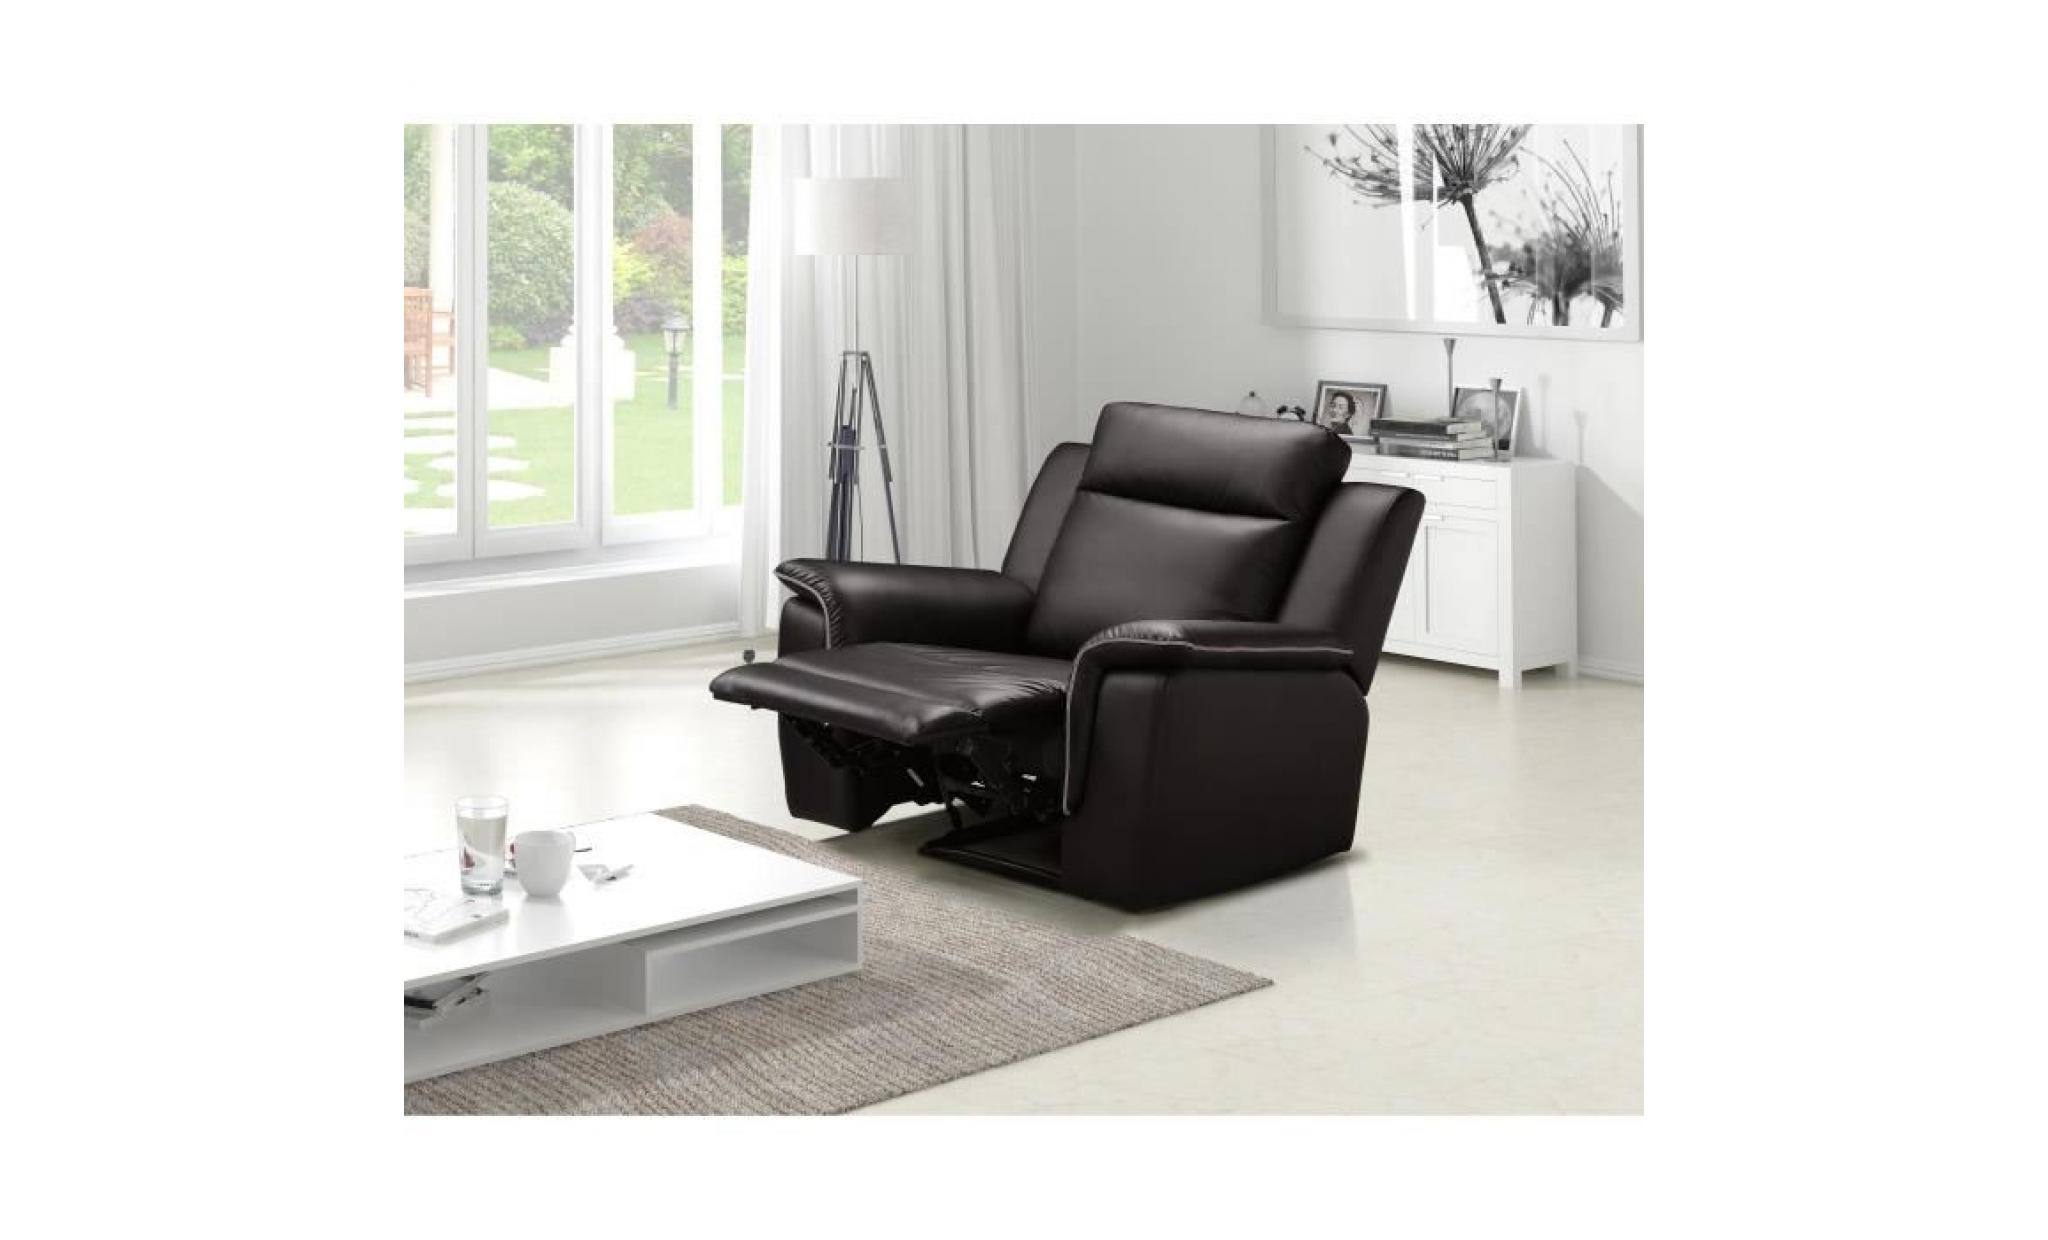 cocoon fauteuil de relaxation   simili marron   contemporain   l 108 x p 96 cm pas cher